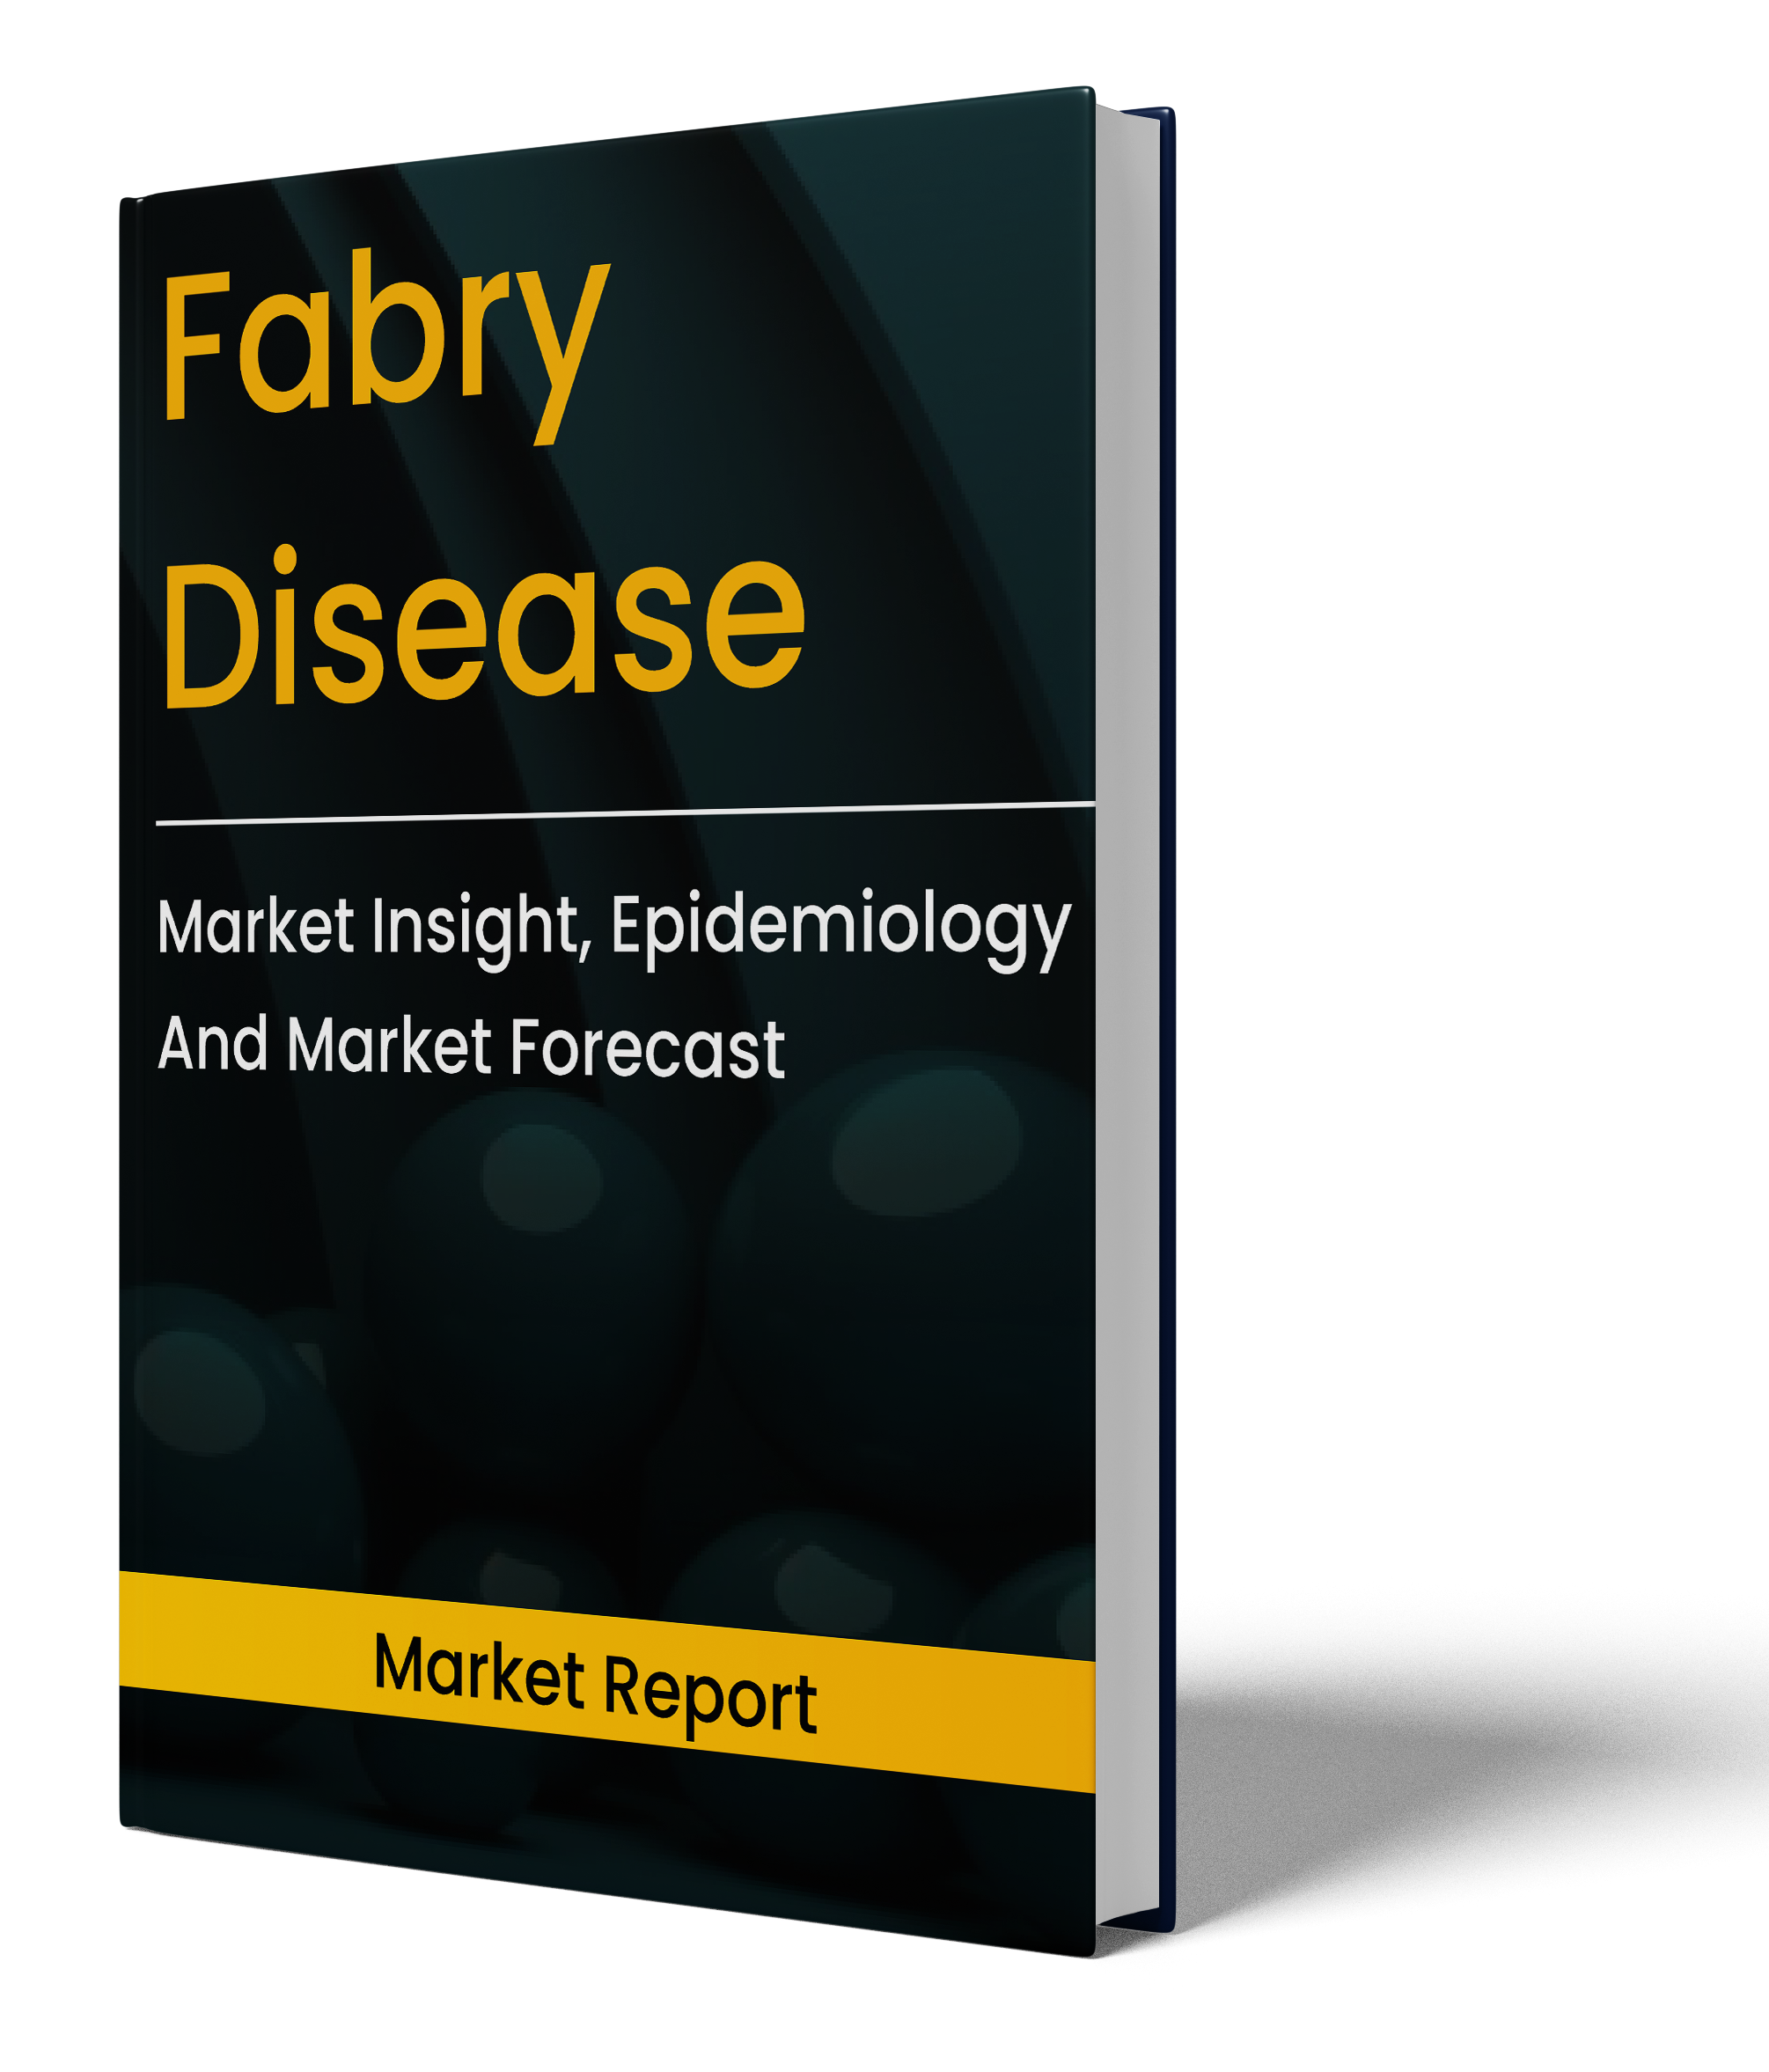 Fabry Disease market report